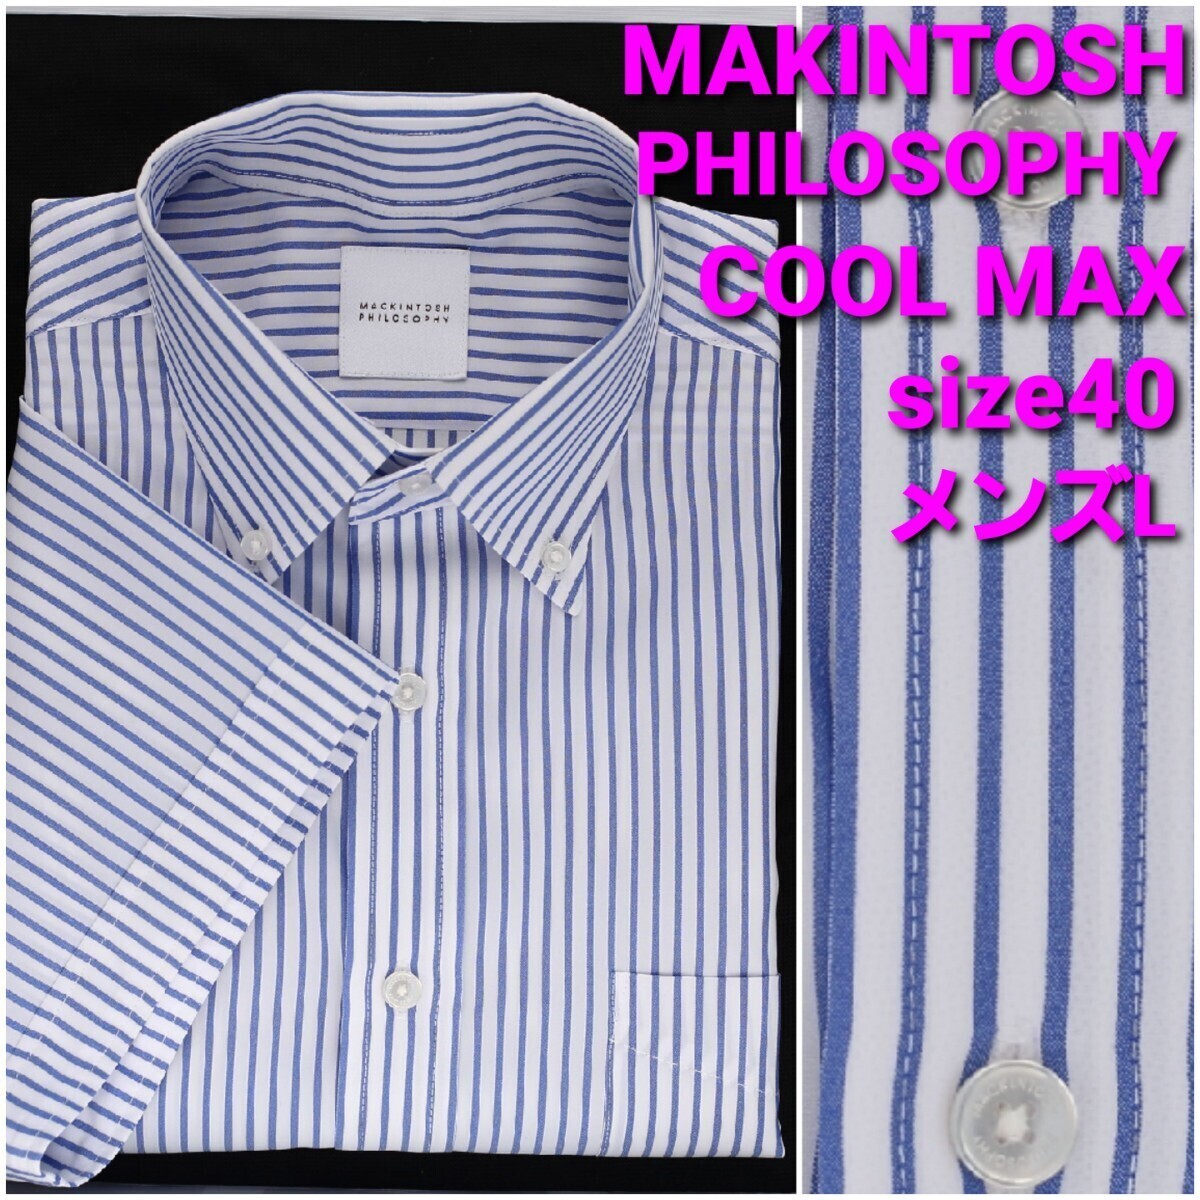 【美品】MACKINTOSH PHILOSOPHY 半袖シャツ size40 メンズL COOL MAX fabricストライプ柄の画像1